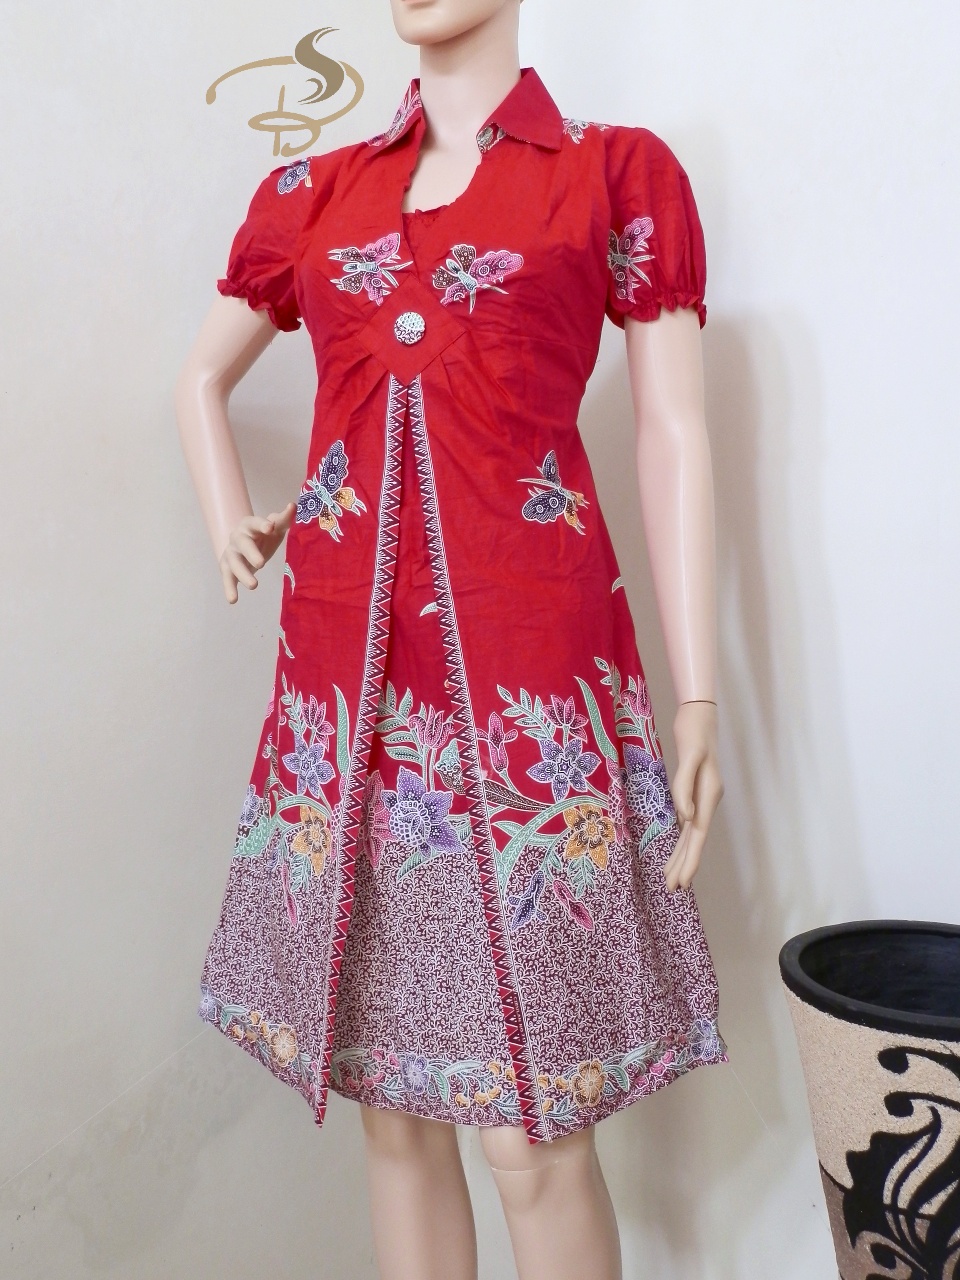 Contoh Desain  Baju  Batik  Bagus  Klopdesain